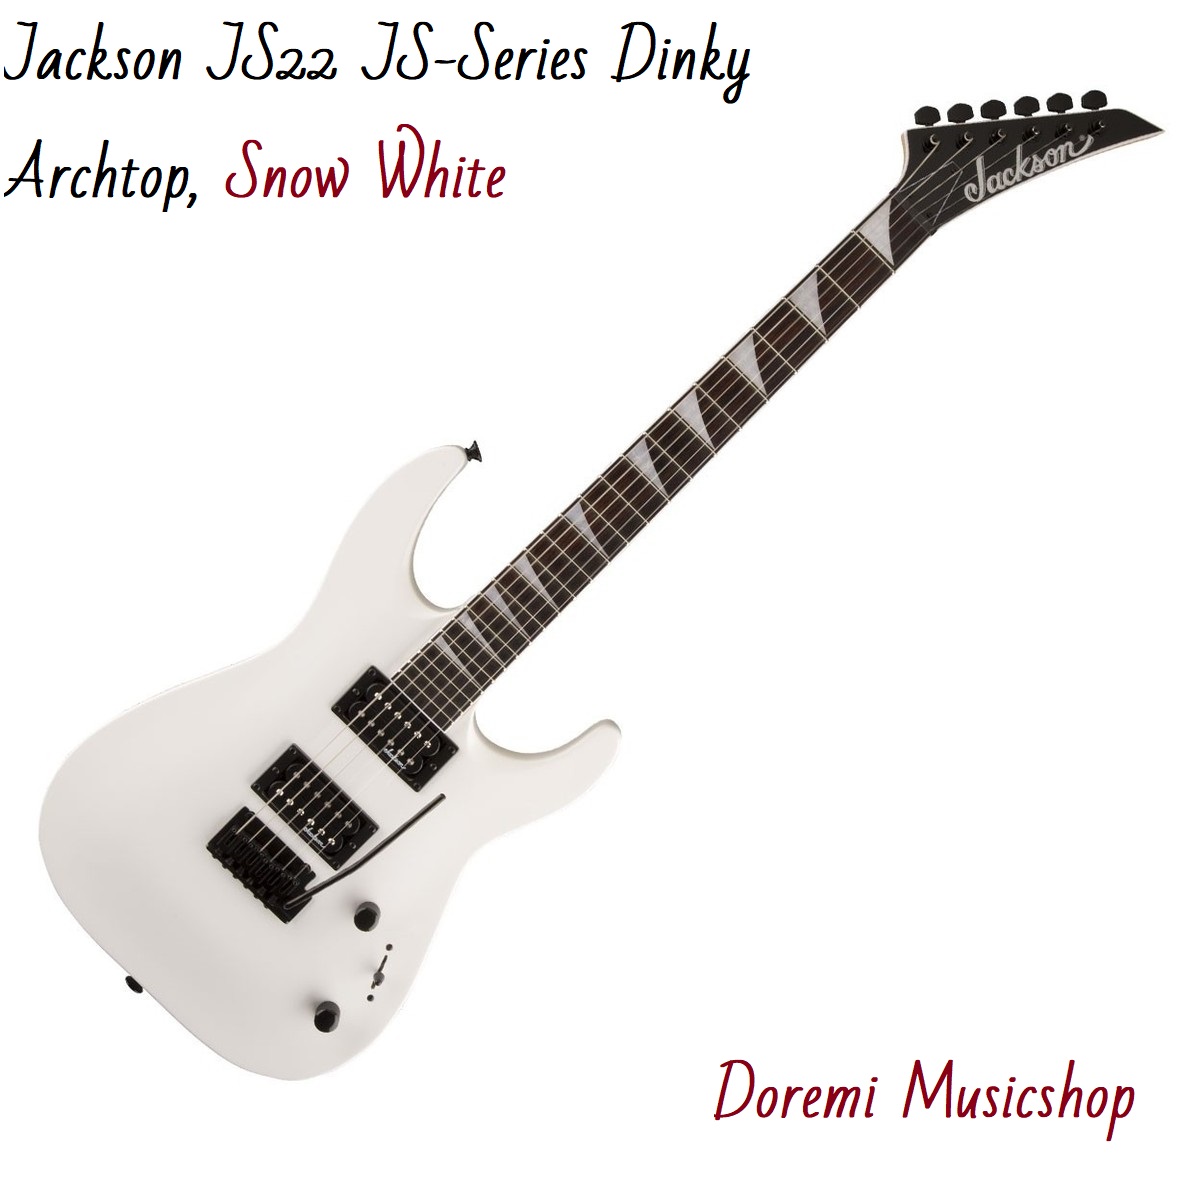 Jackson JS22 JS-Series Dinky Archtop